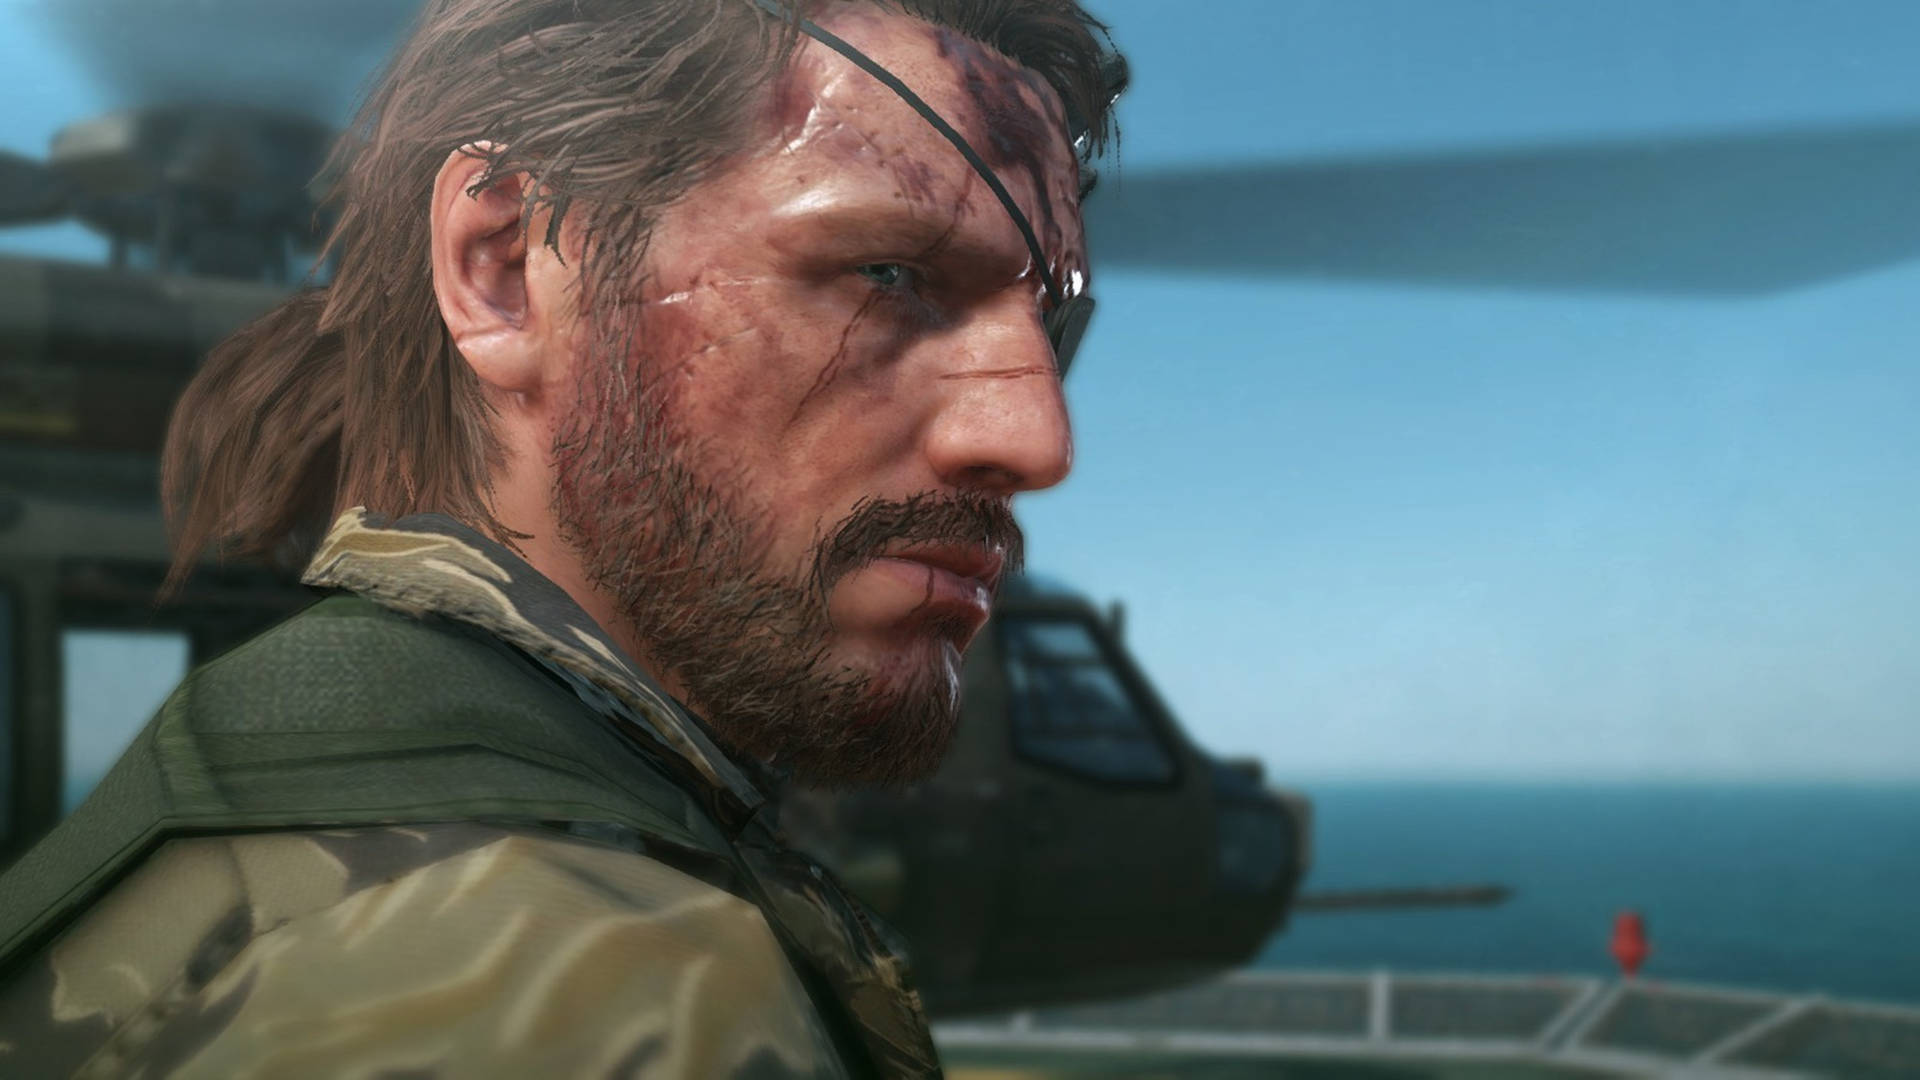 Big Boss Metal Gear Solid V Screenshot Wallpaper